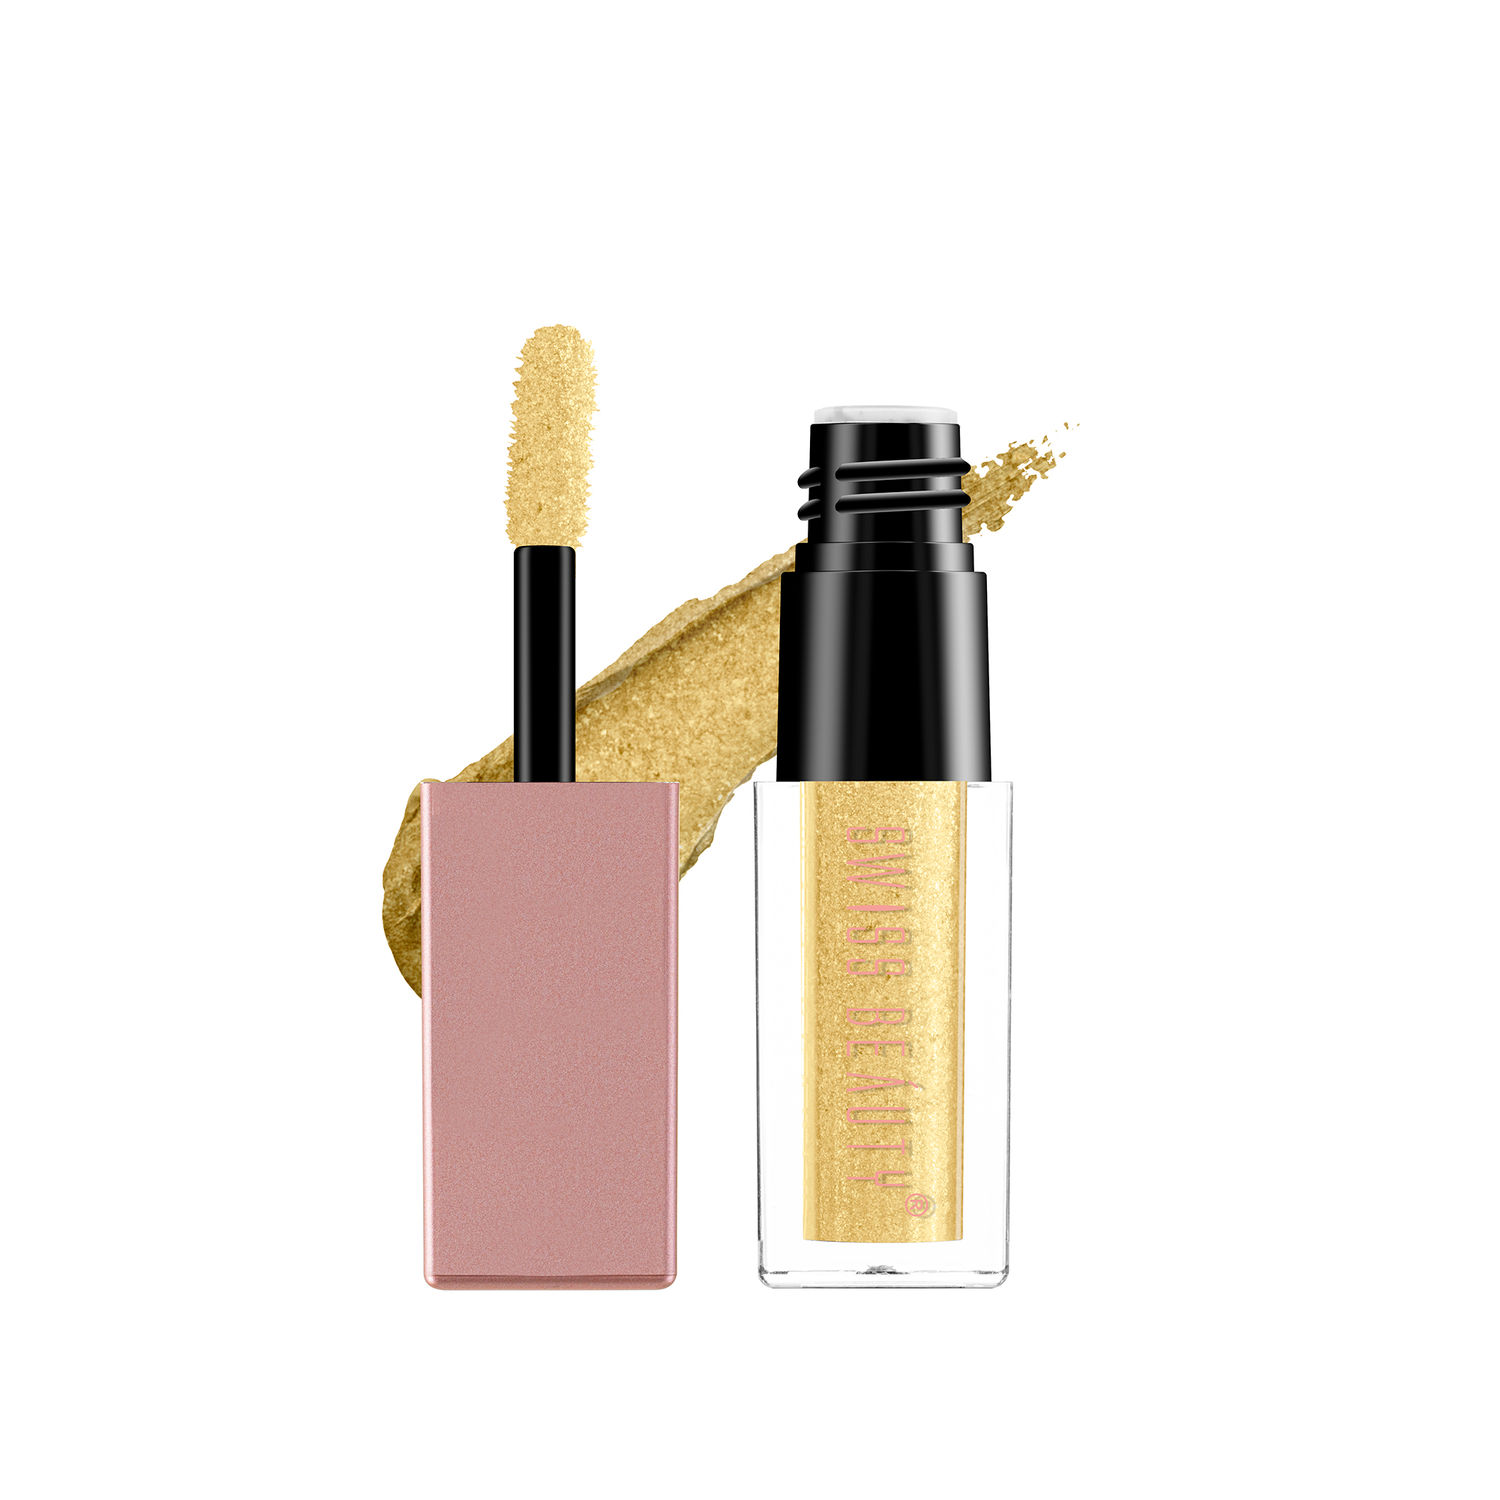 Buy Swiss Beauty Metallic Liquid Eyeshadow - Gold -01 (3 ml) - Purplle